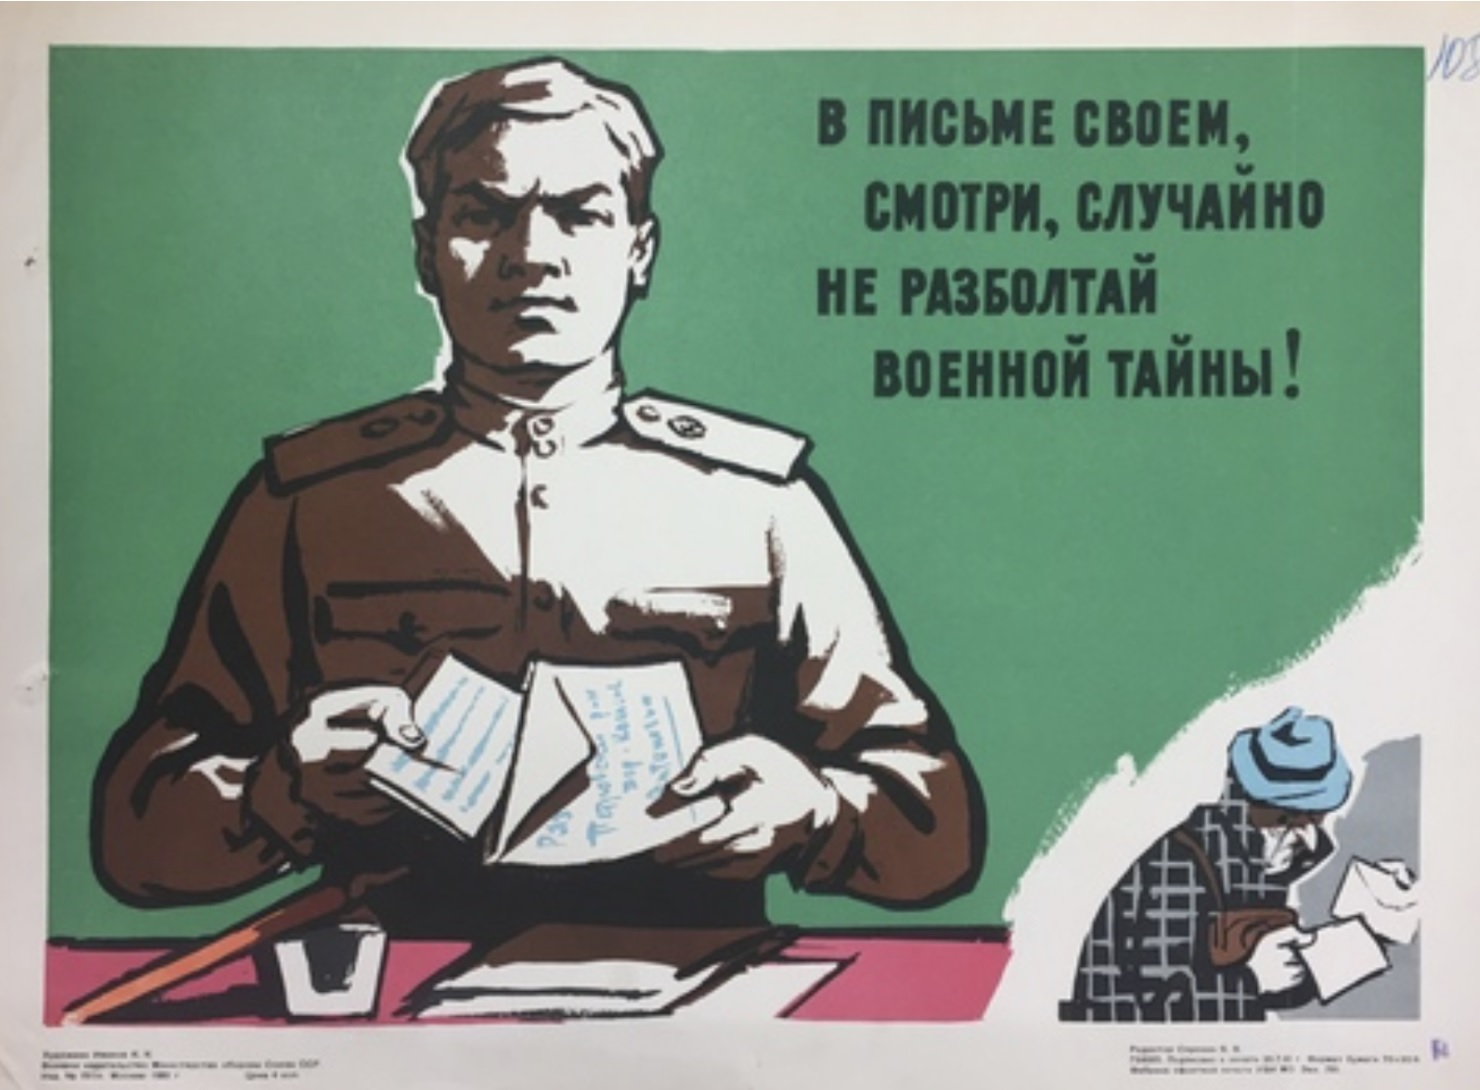 Сохранения государственной тайны. Государственная тайна плакат. Советские плакаты гостайна. Плакаты про секретность. Защита государственной тайны.